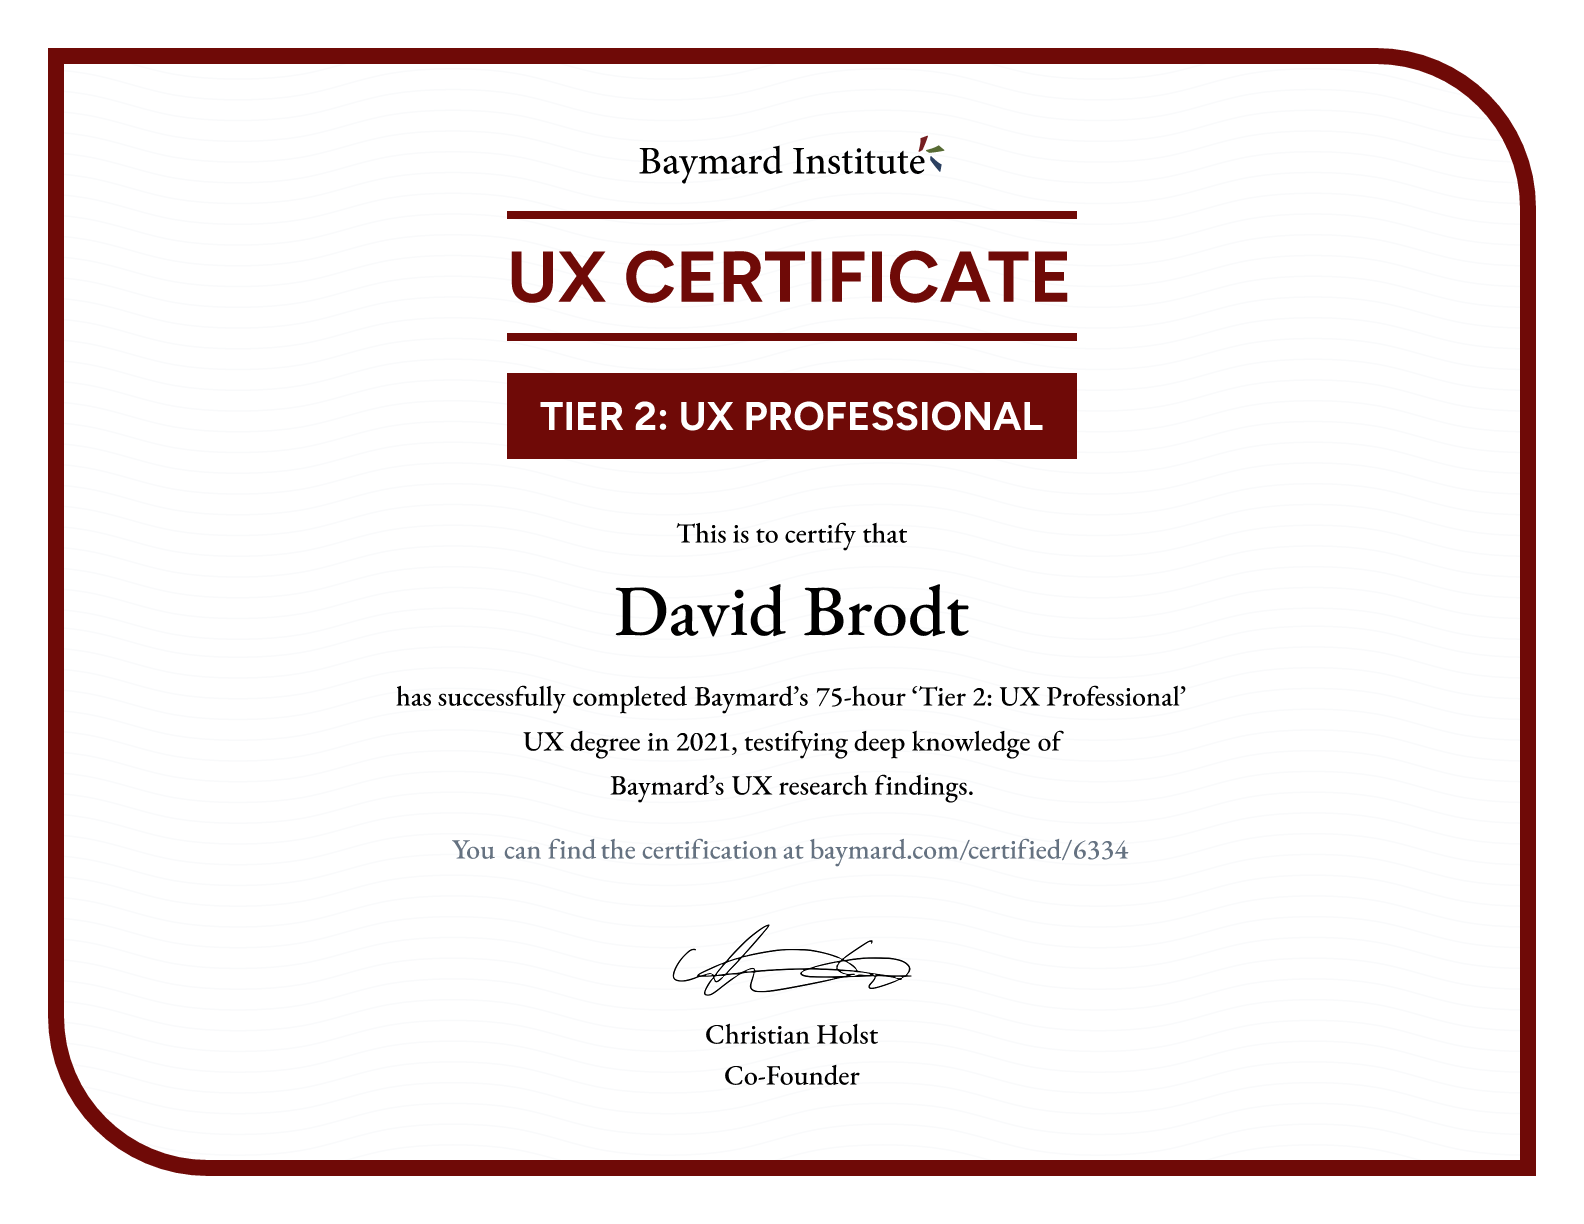 David Brodt’s certificate